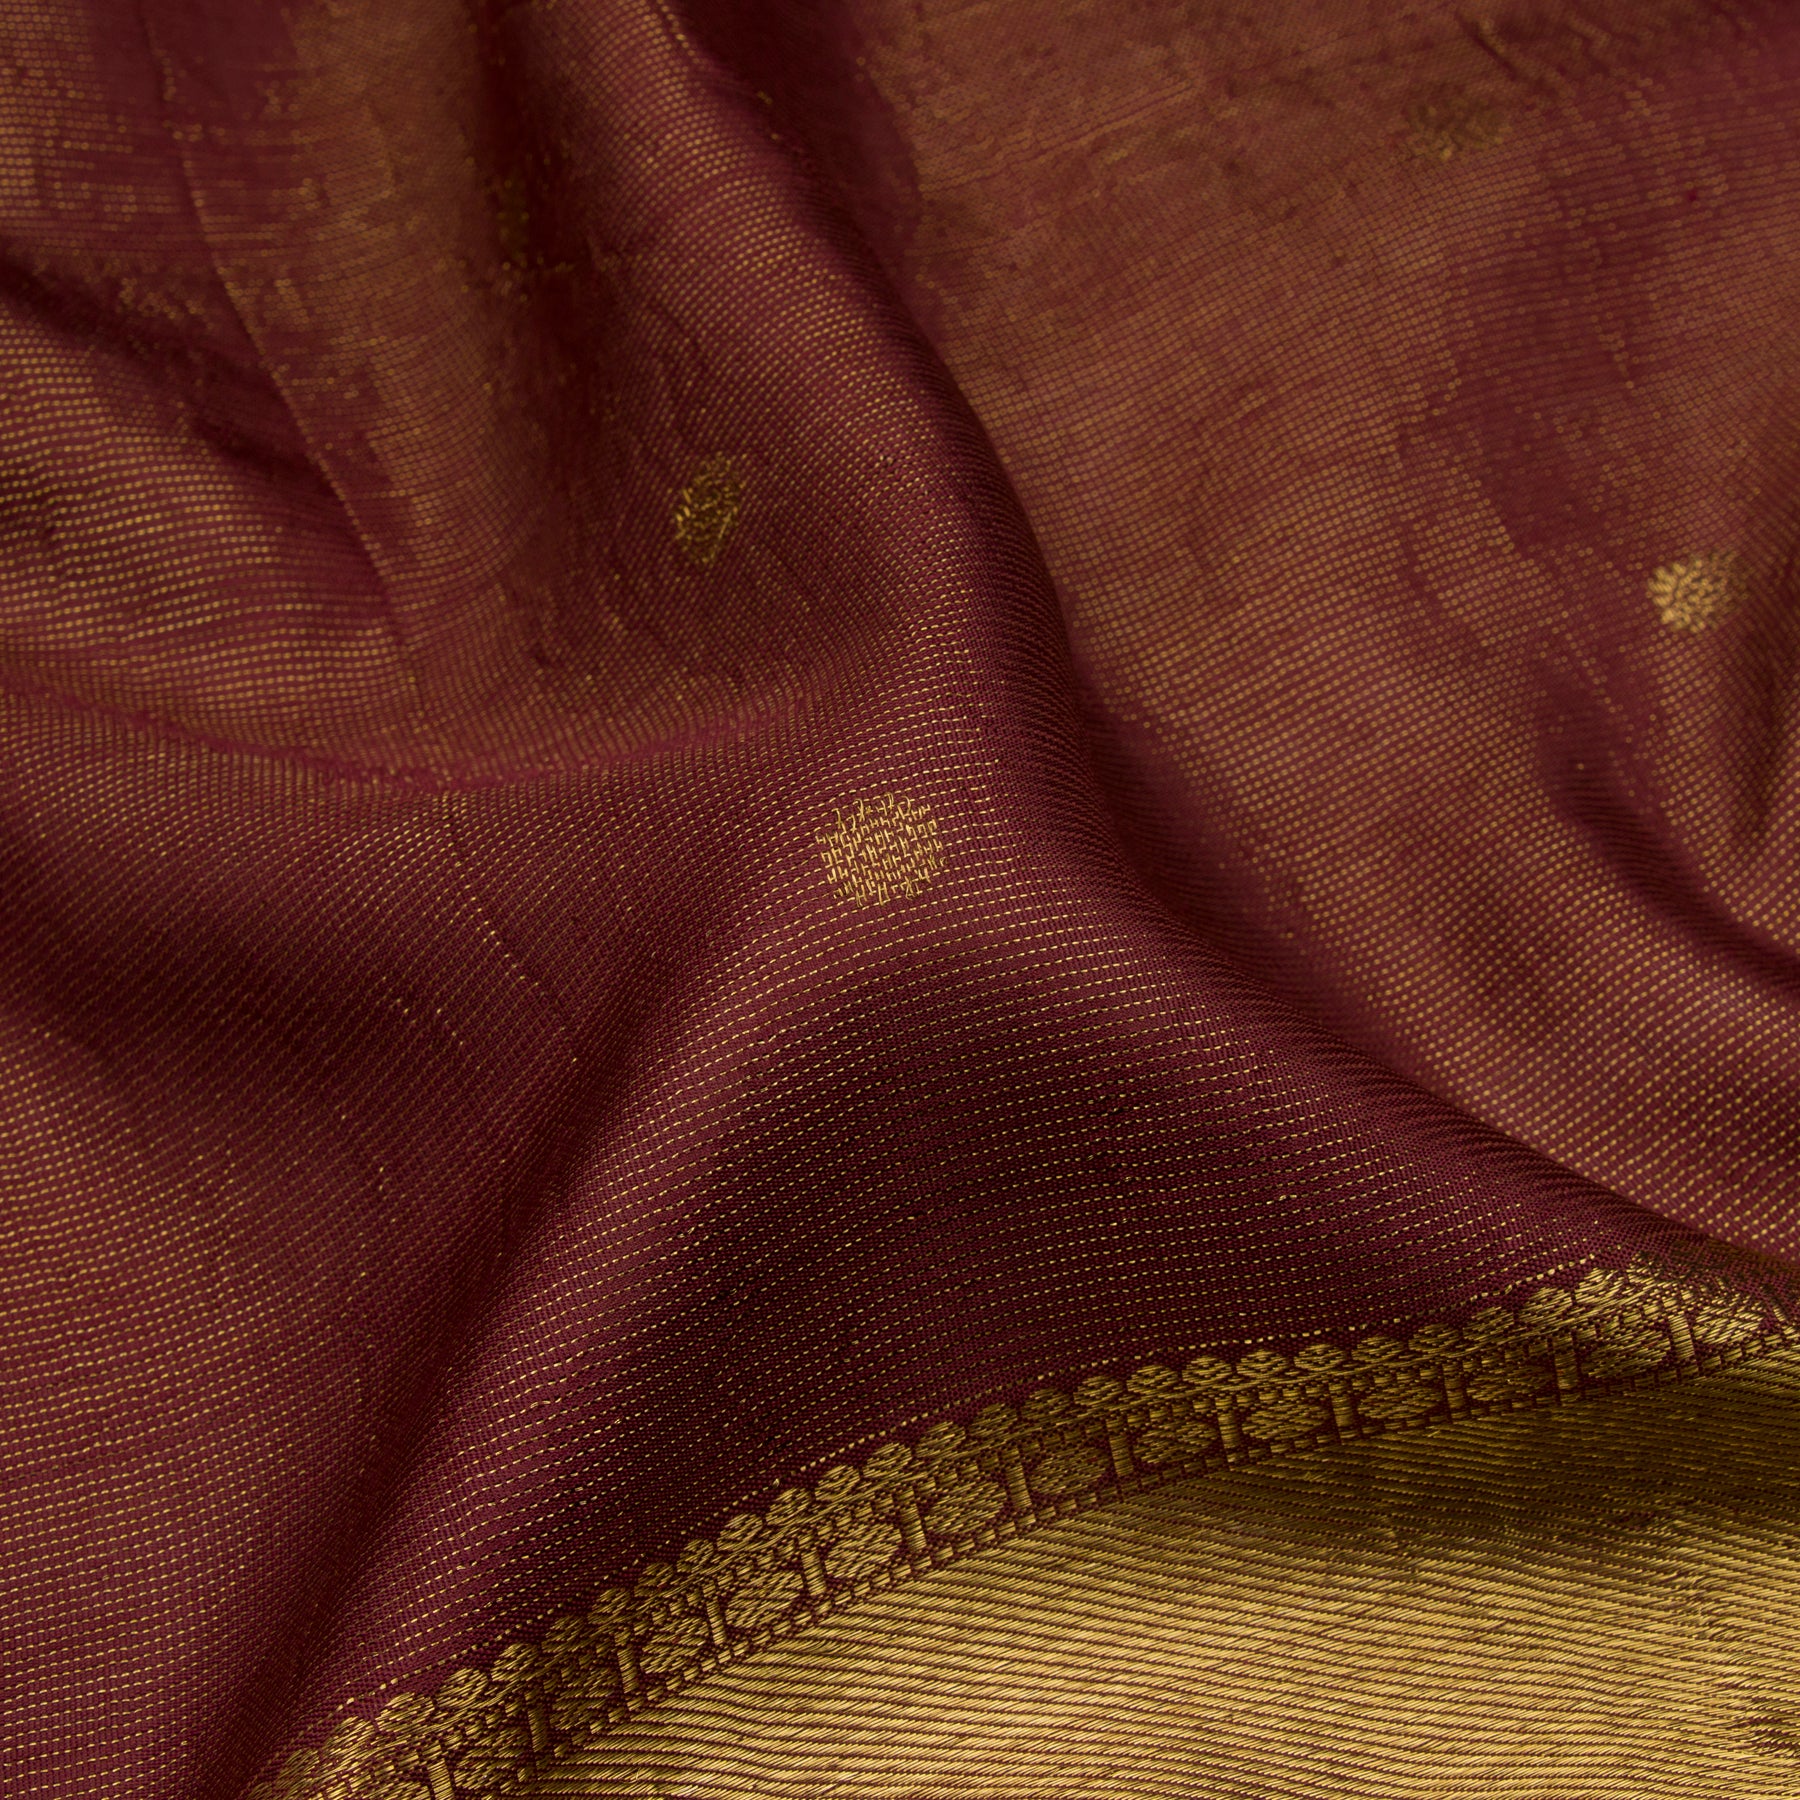 Kanakavalli Kanjivaram Silk Sari 23-595-HS001-02938 - Fabric View